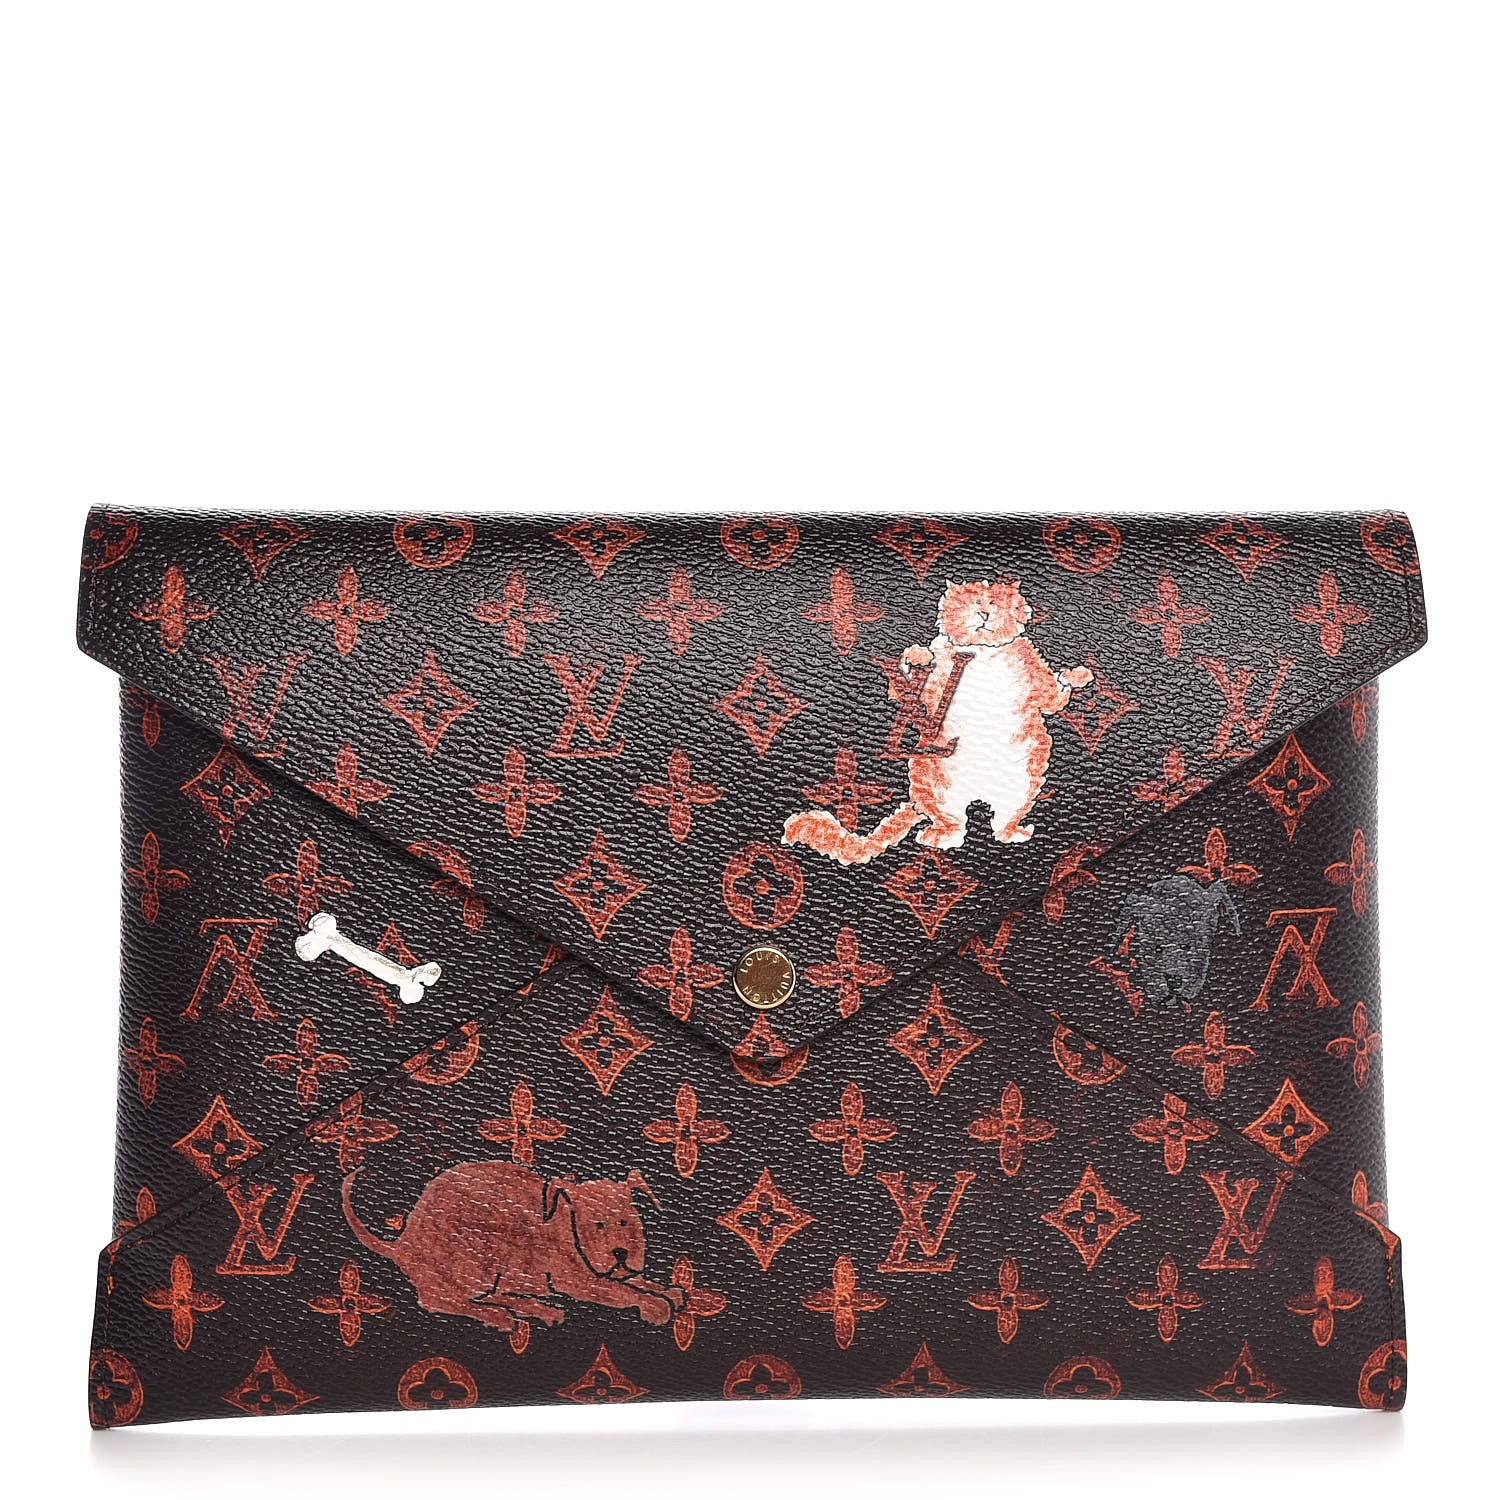 Louis Vuitton X Grace Coddington Black Cat Cardholder, Luxury